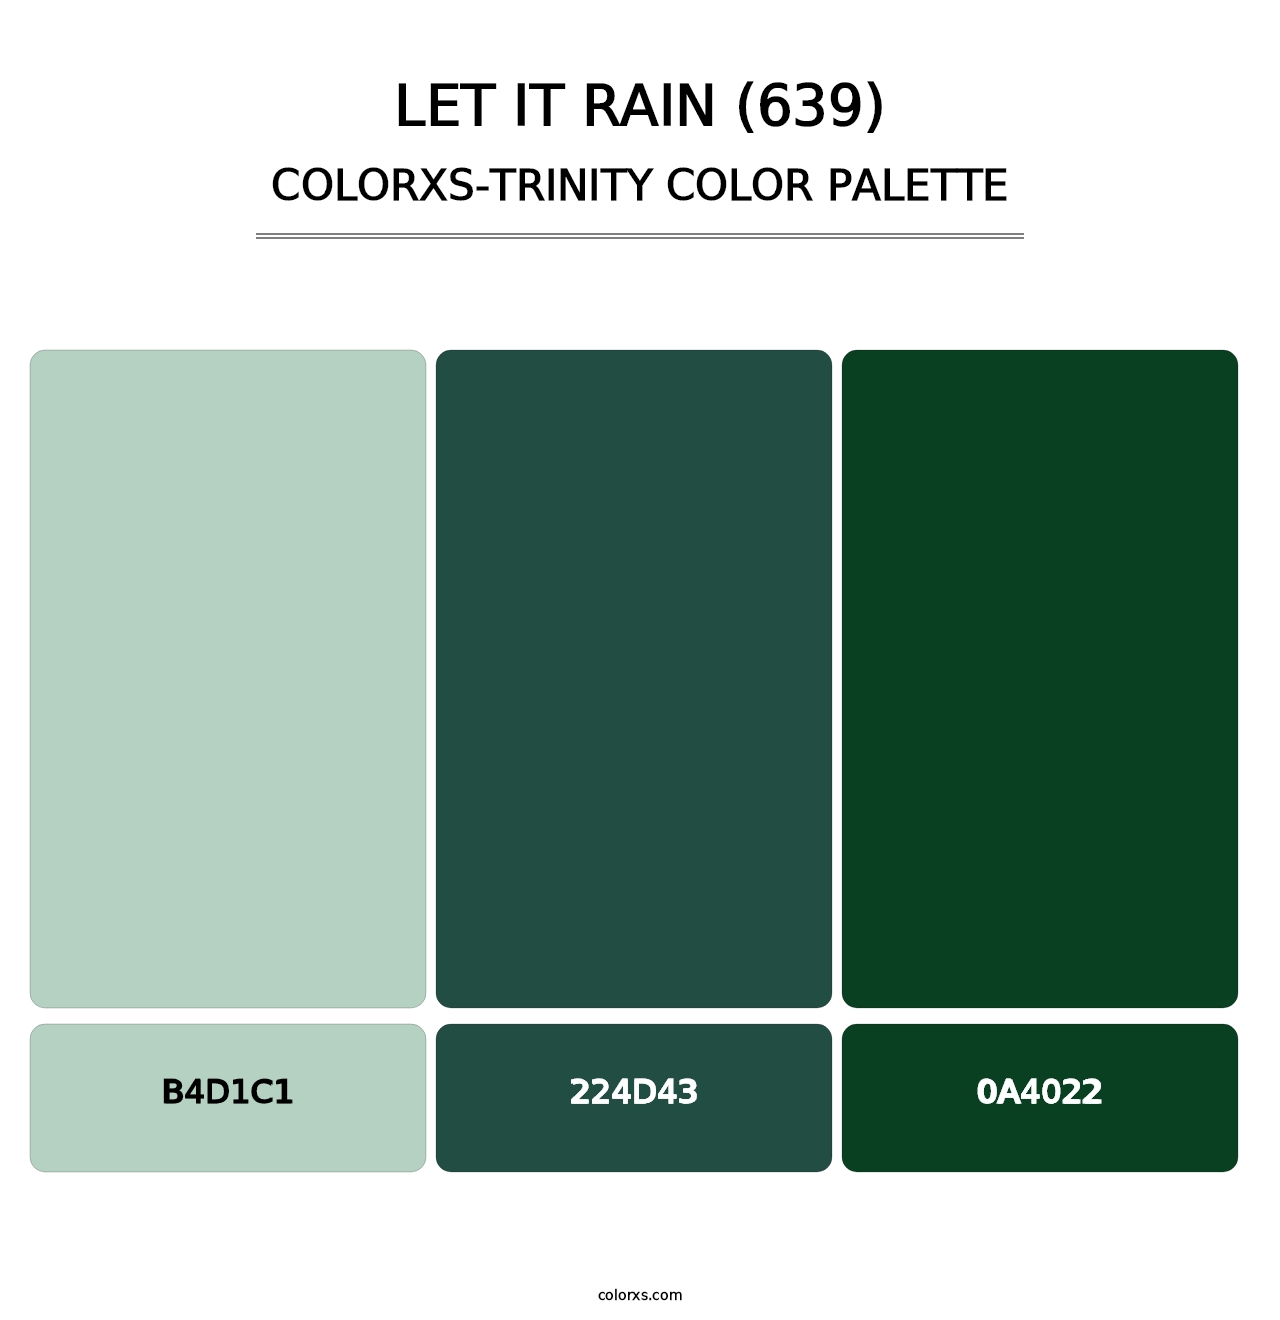 Let It Rain (639) - Colorxs Trinity Palette